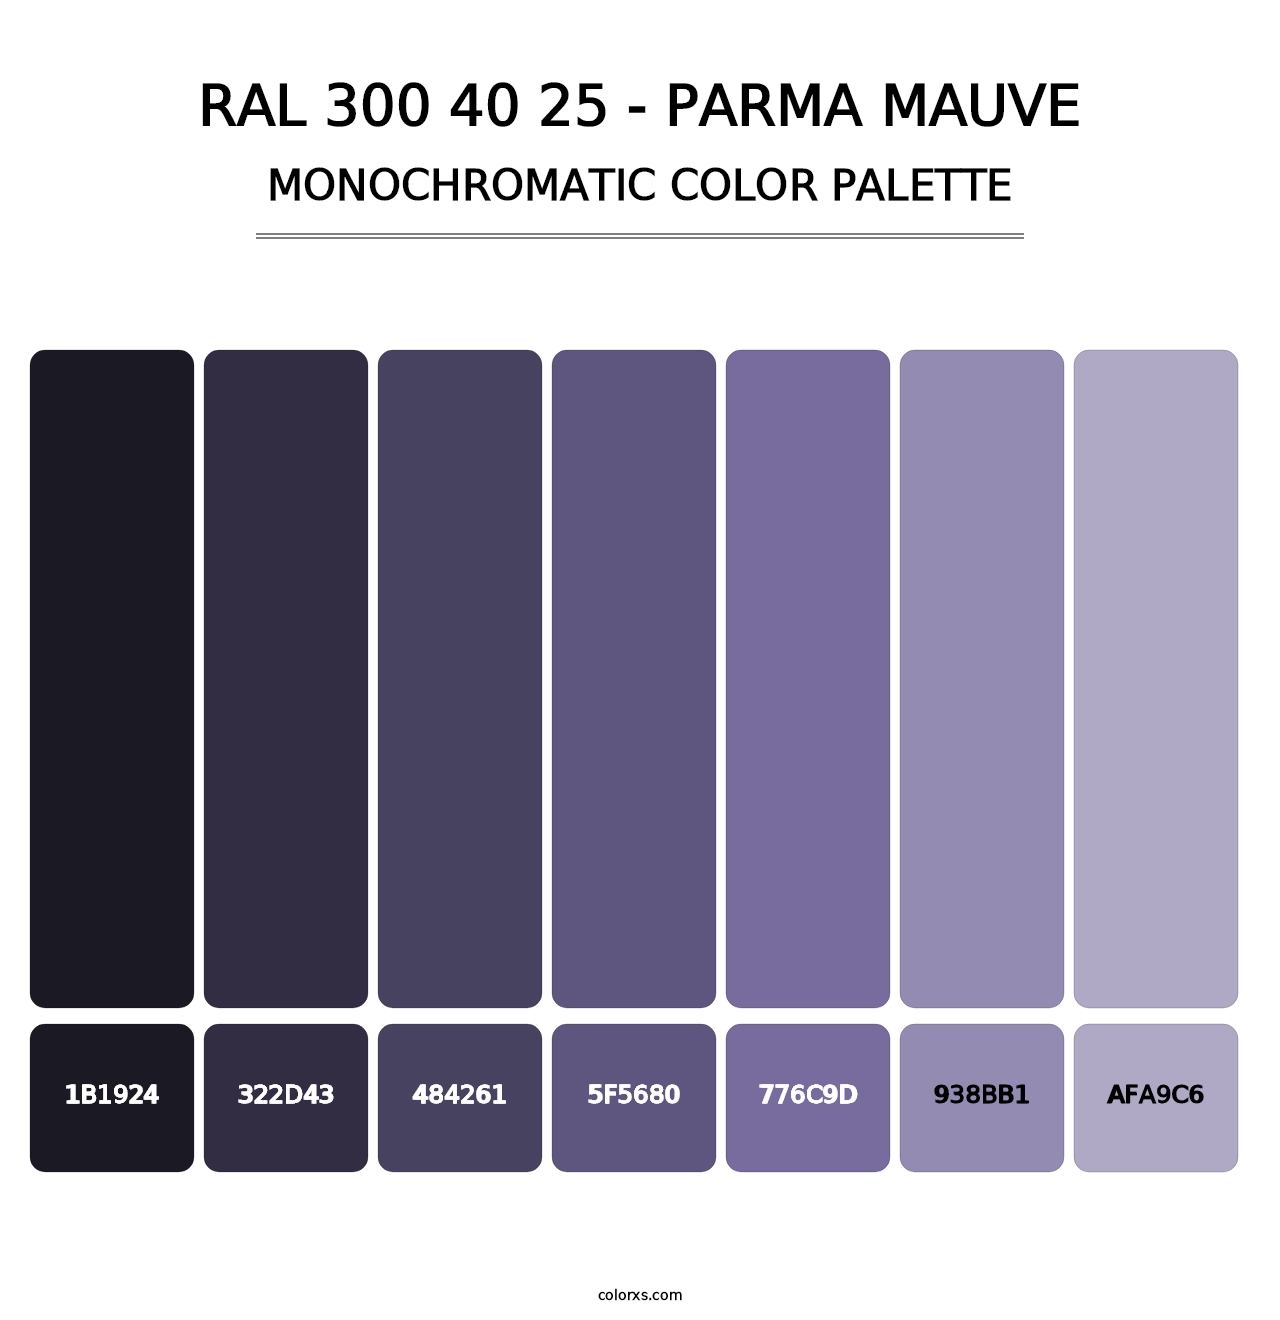 RAL 300 40 25 - Parma Mauve - Monochromatic Color Palette